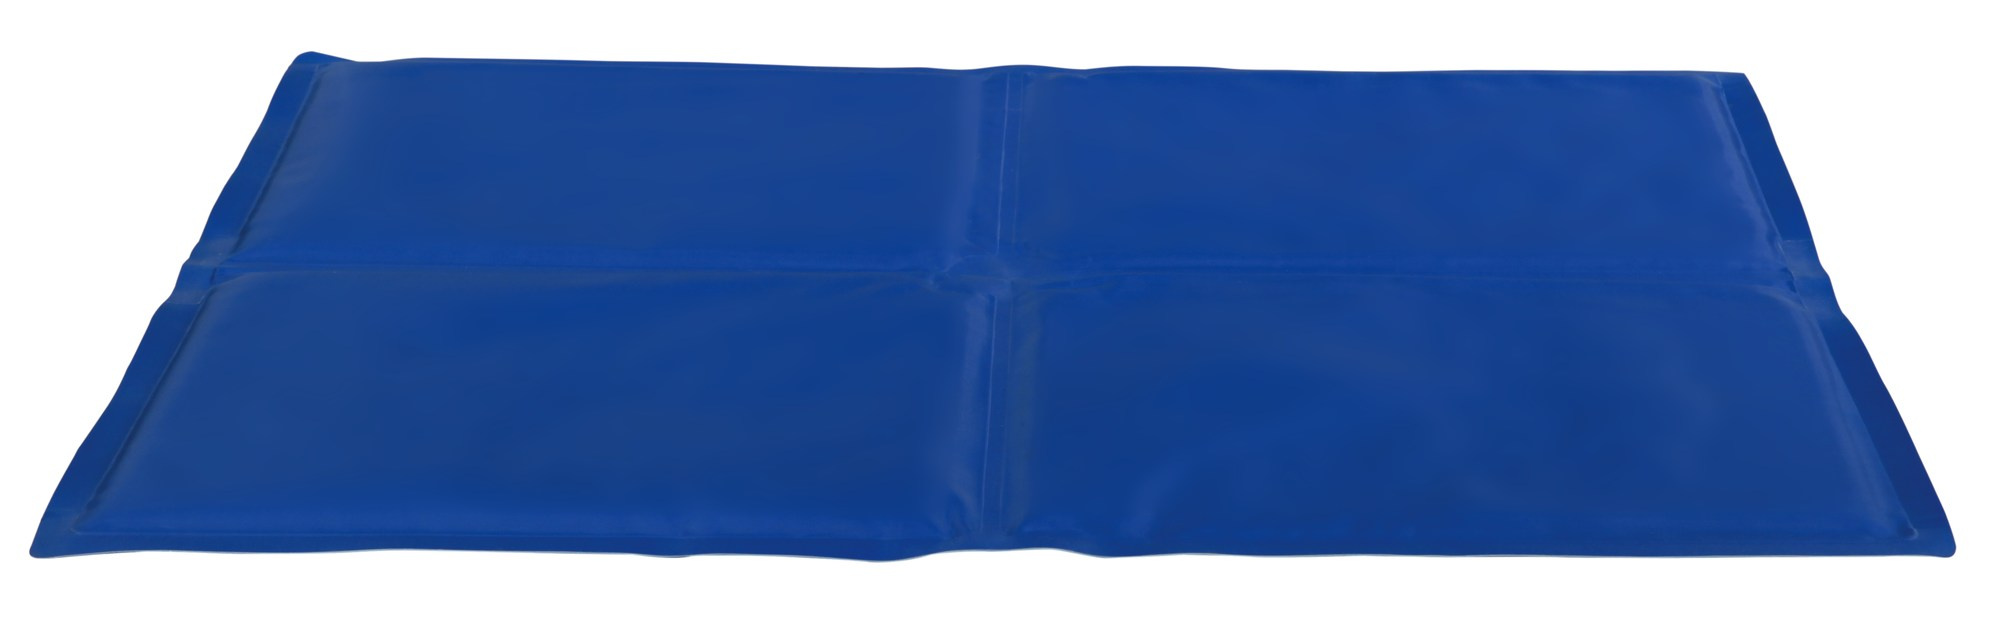 Saltea Racoritoare 50×40 cm Albastru 28685 petmart.ro